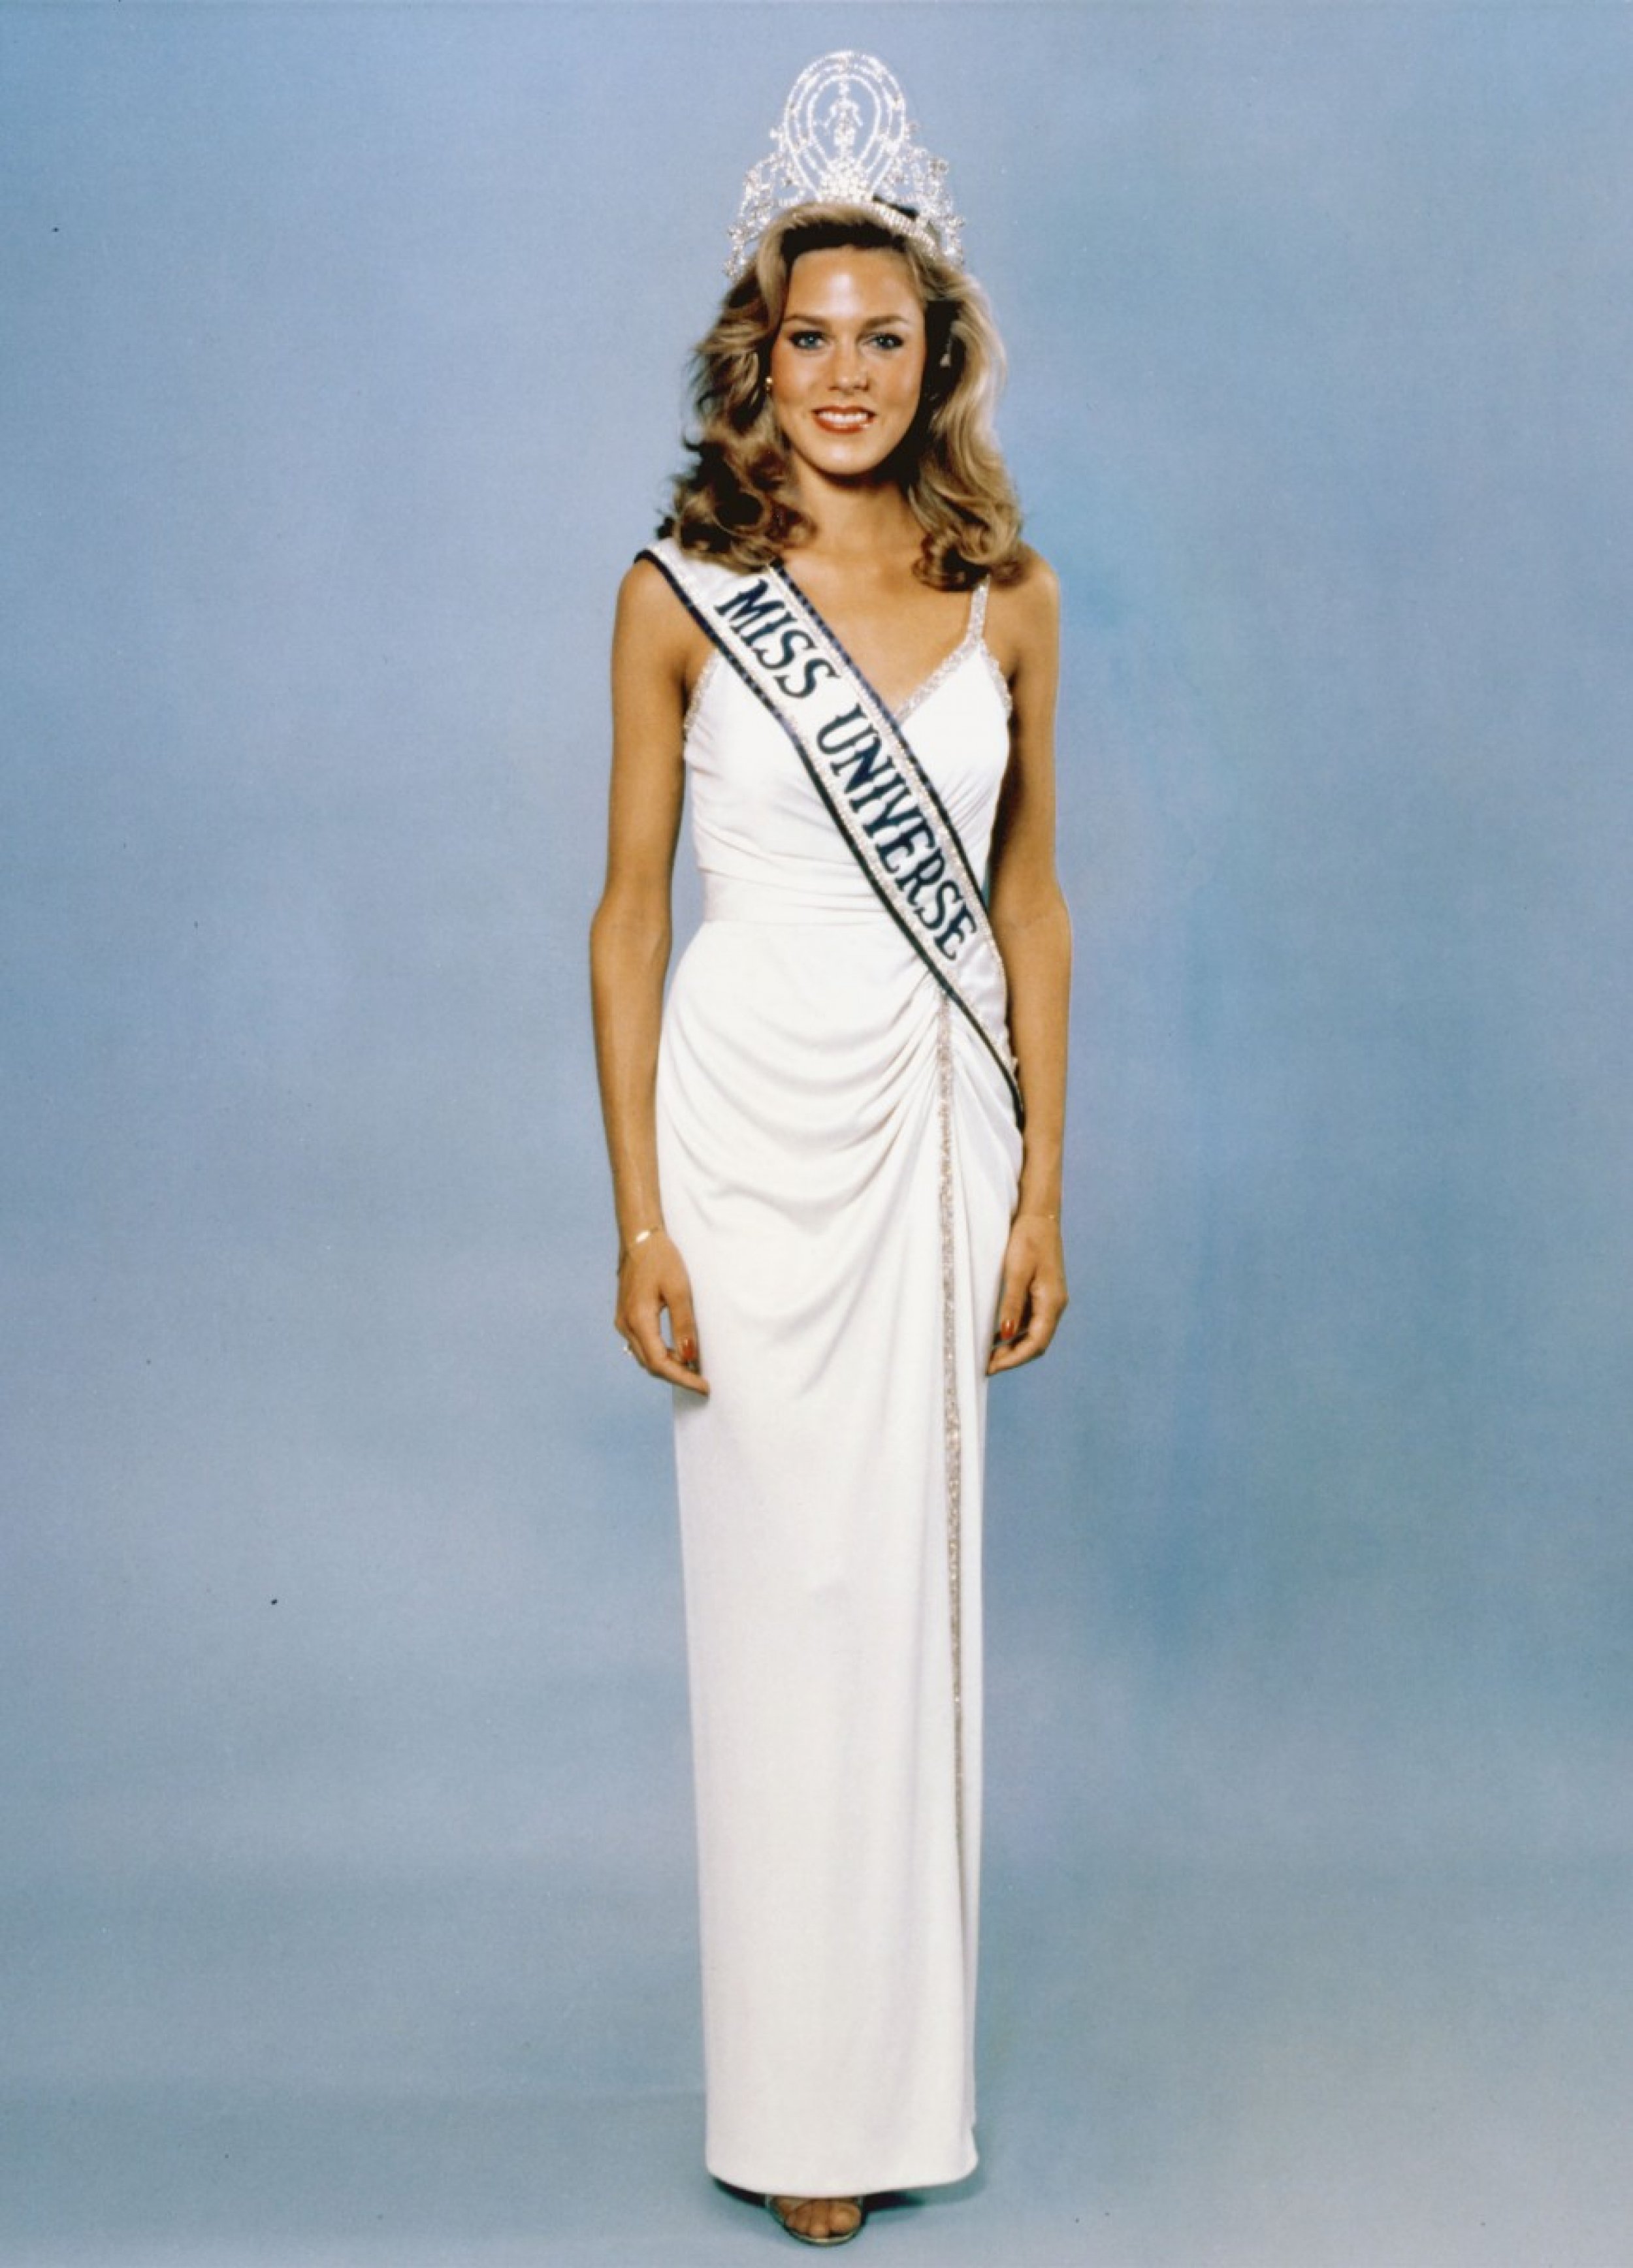 3. Miss Universe 1980 - Shawn Weatherly 